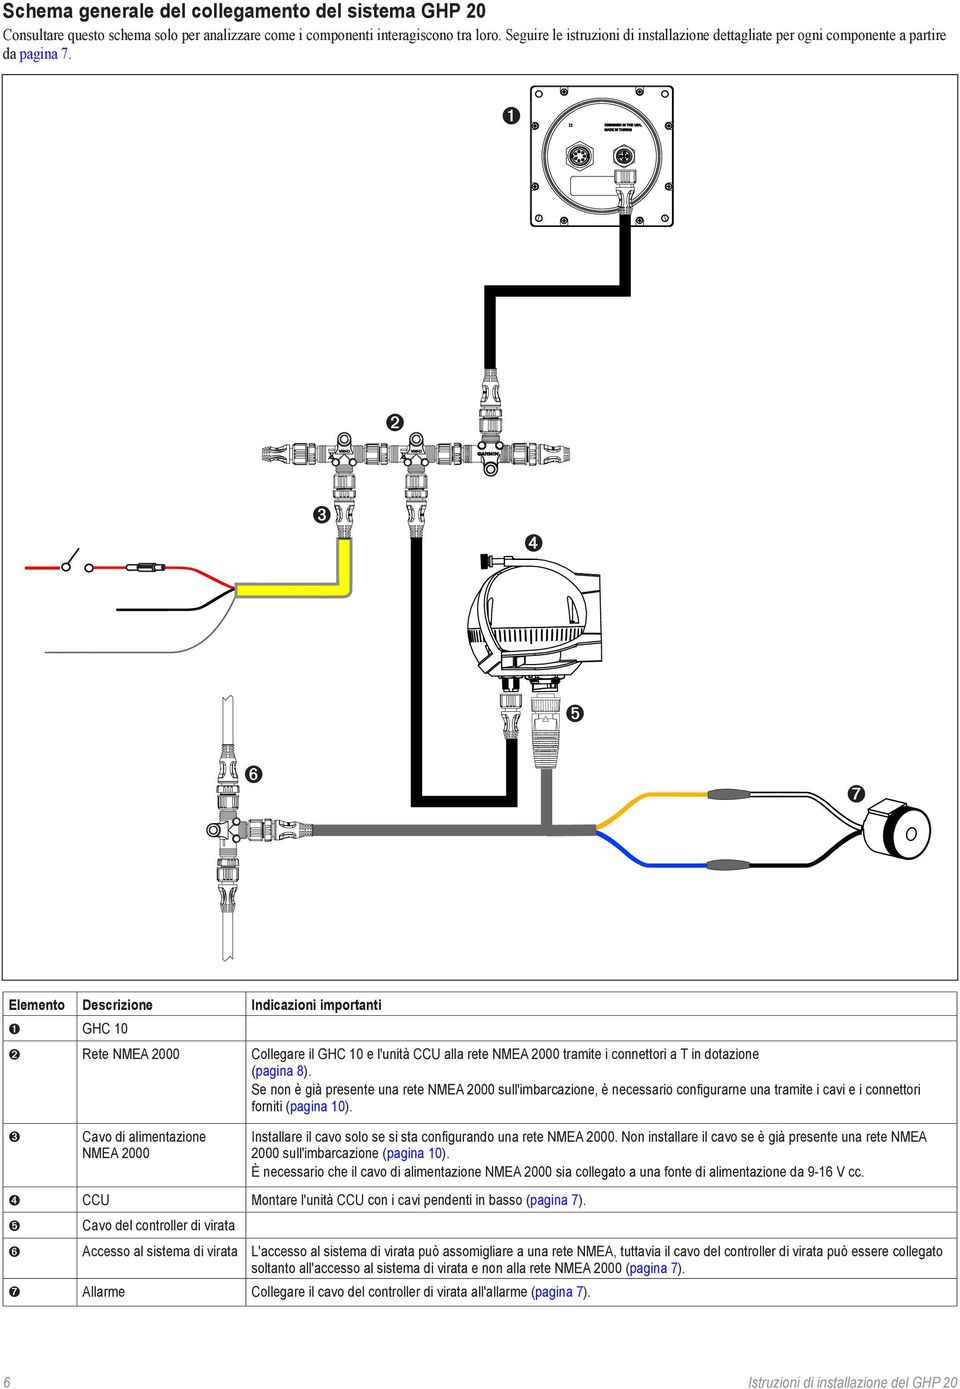 ➍ ➎ ➏ ➐ Elemento Descrizione Indicazioni importanti GHC 10 Rete NMEA 2000 Collegare il GHC 10 e l'unità CCU alla rete NMEA 2000 tramite i connettori a T in dotazione (pagina 8).